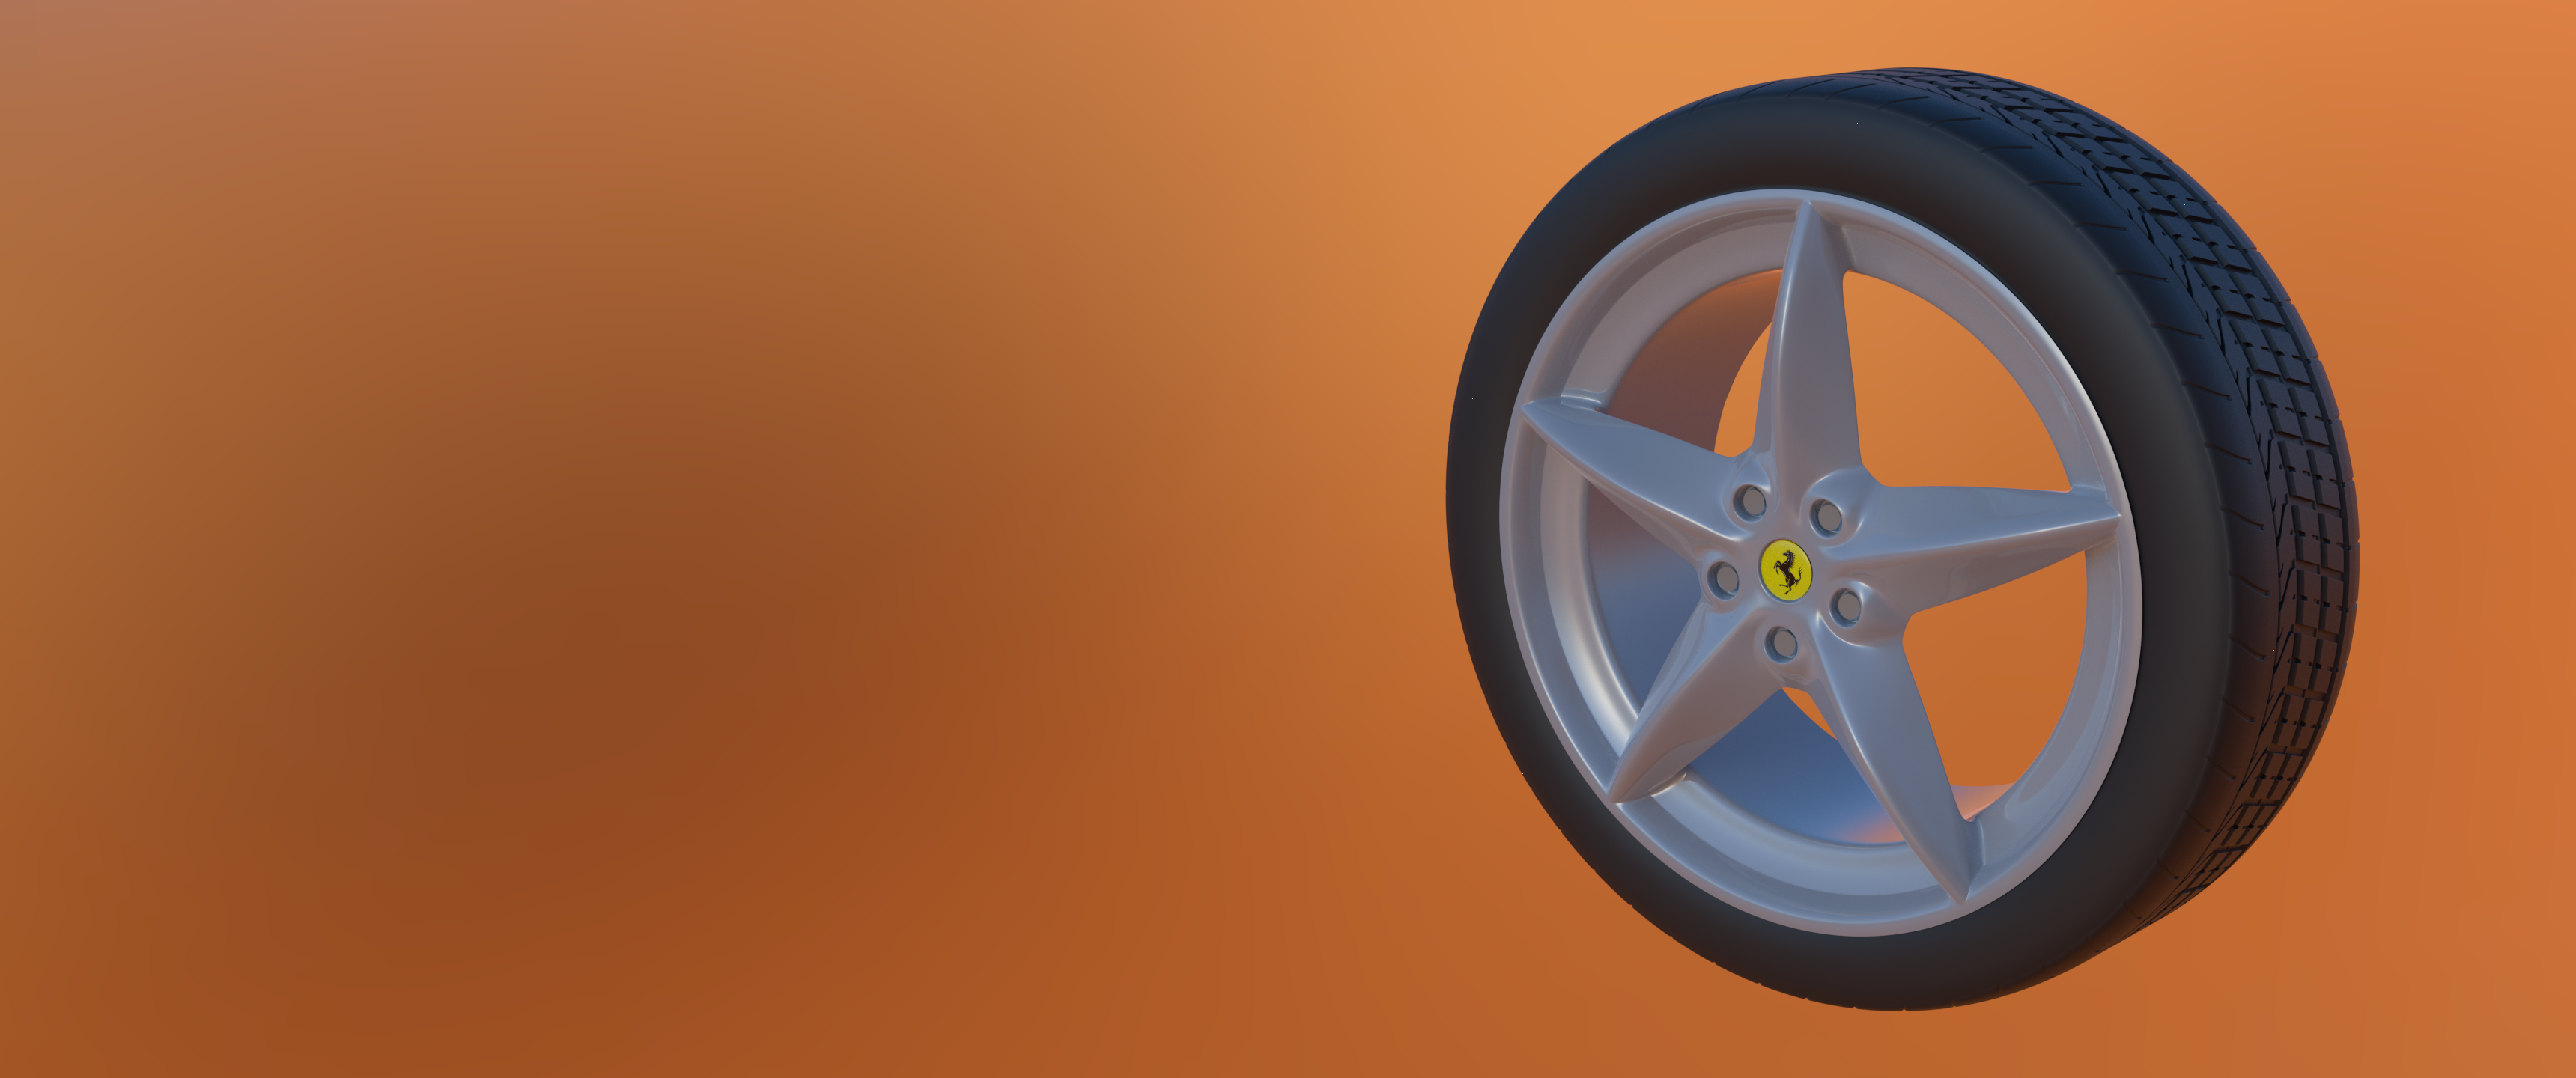 Ferrari 360 Wheel in Blender